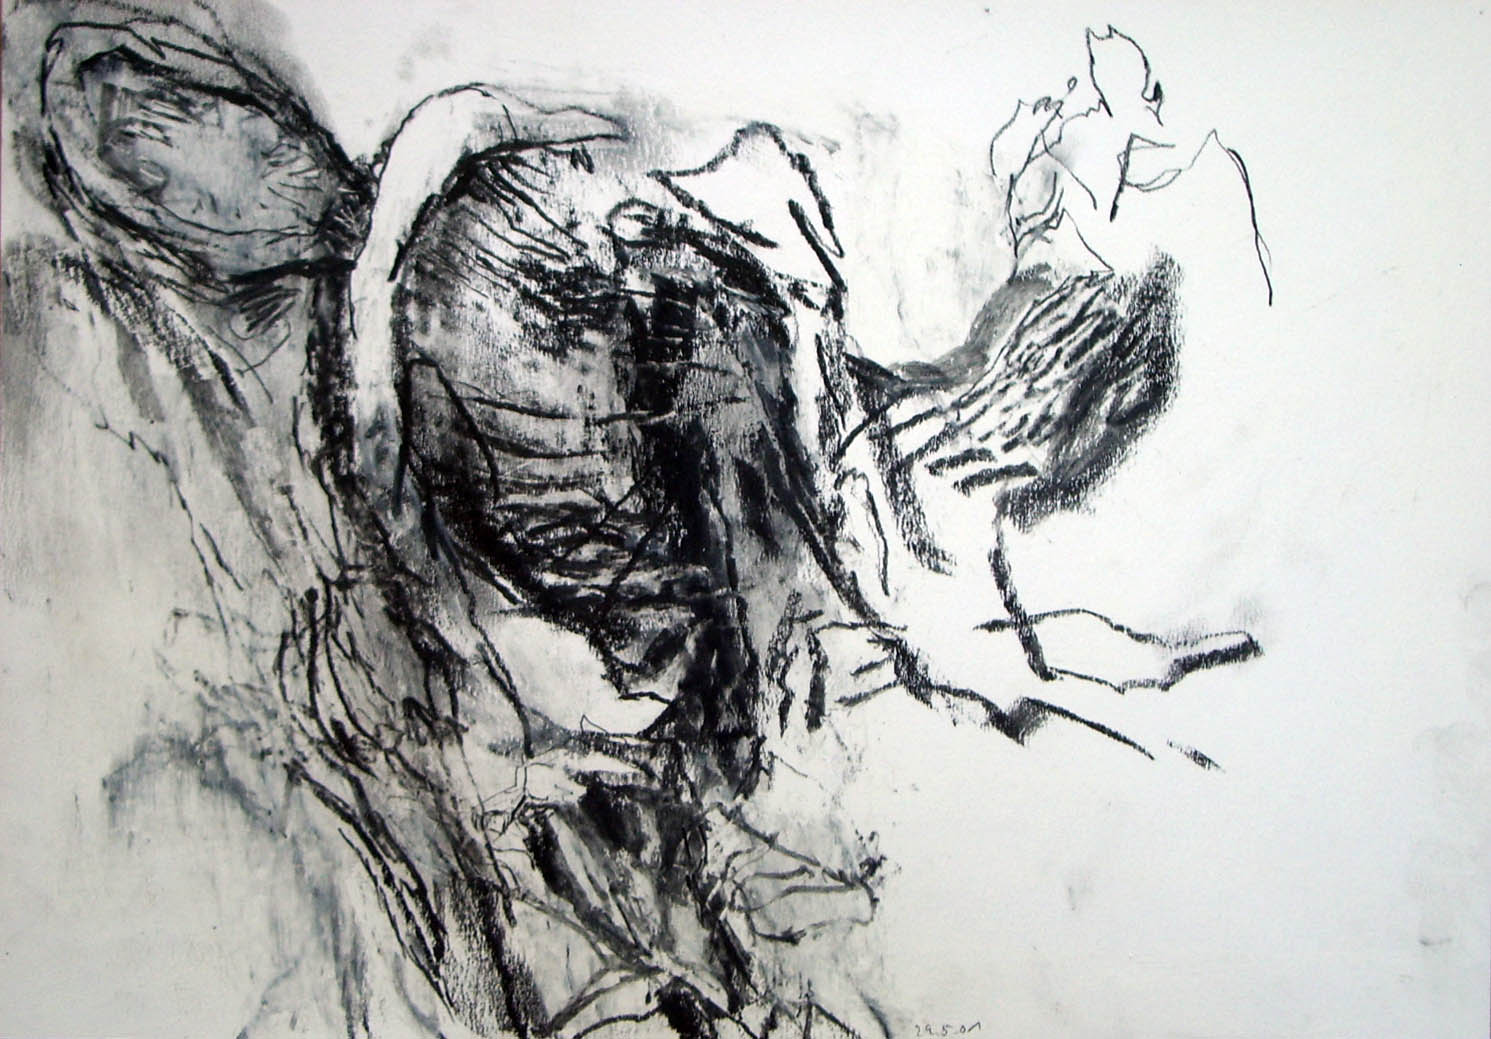 Aufbrechen (Baum Detail) 2001, Ölpastell und Bleistift auf Papier, 25 x 36,5 cm